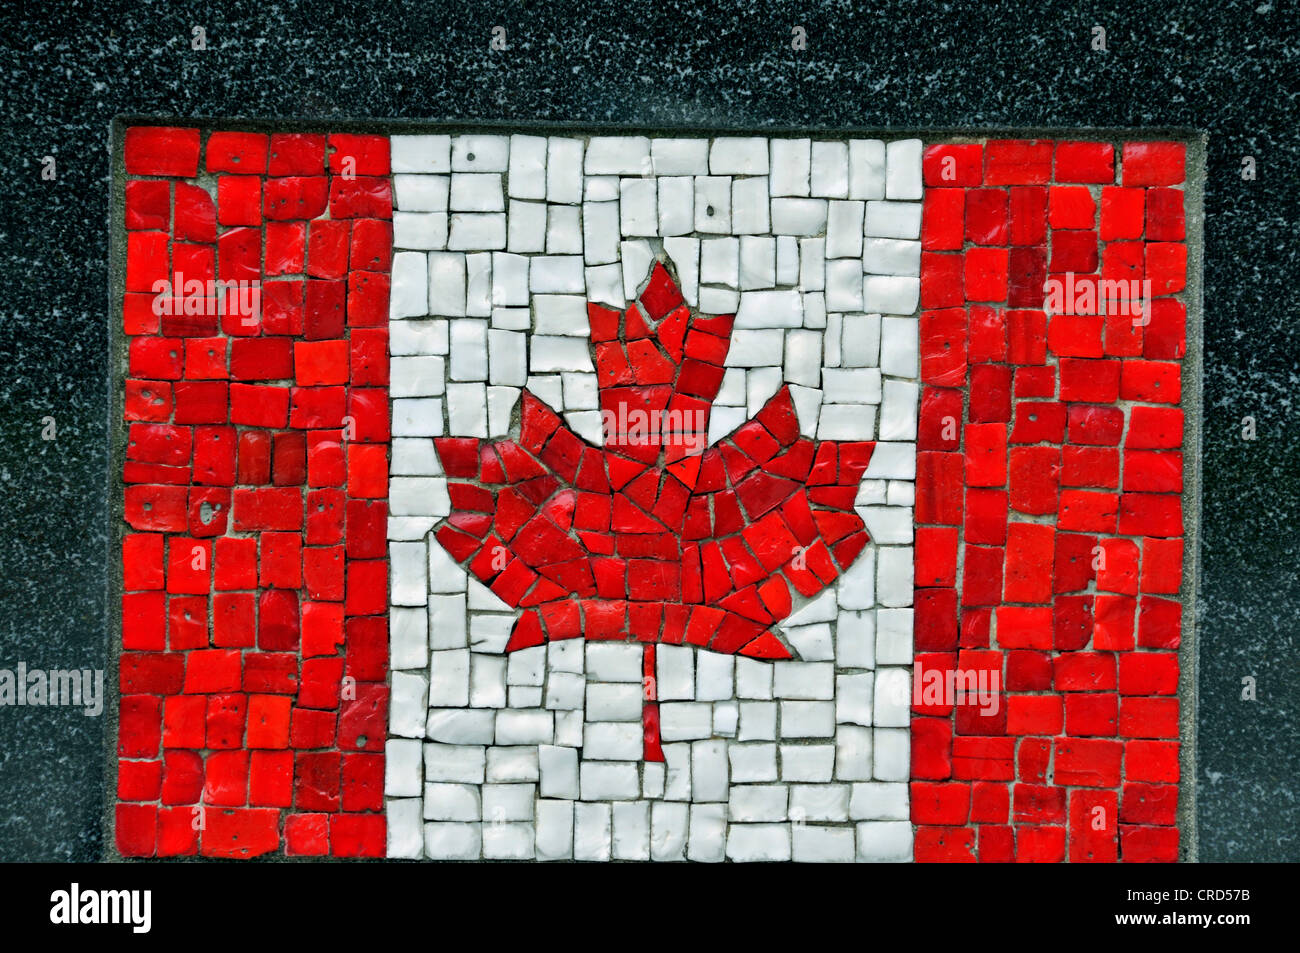 Flagg du Canada comme une mosaïque dans le Financial District - monument du Soldat universel, USA, New York, Manhattan Banque D'Images